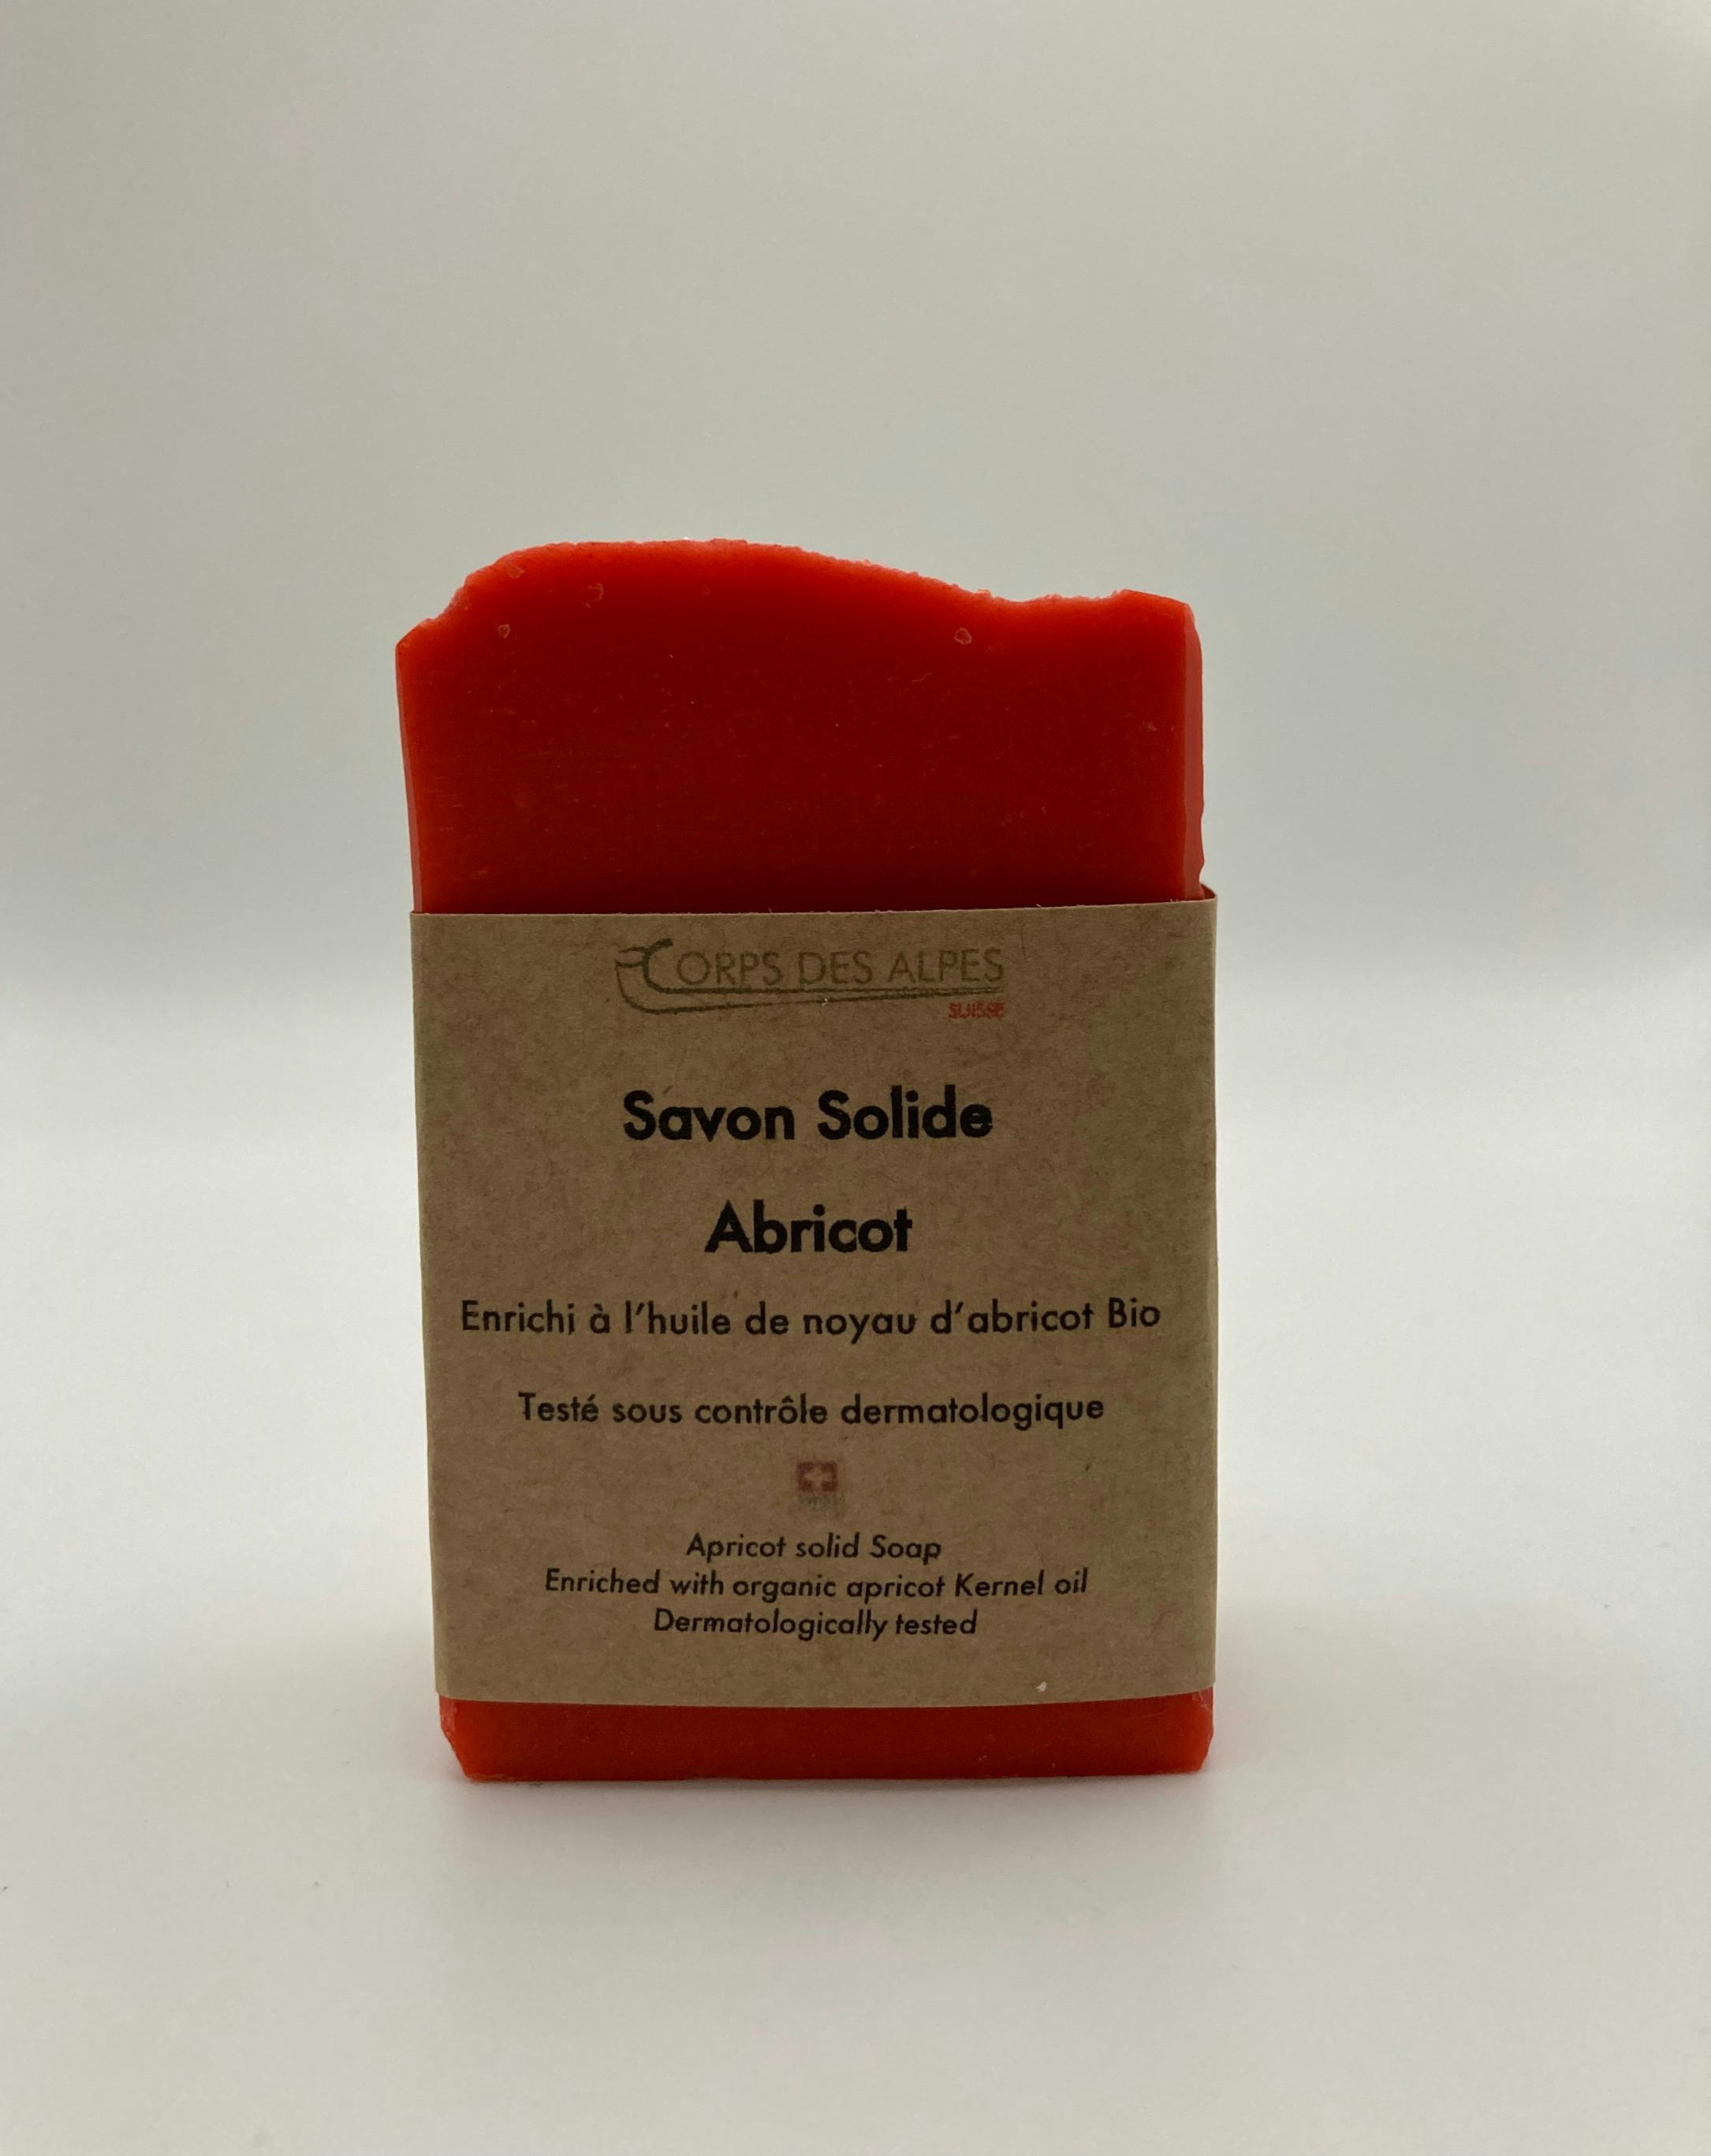 Savon Solide Abricot, produit artisanal en vente directe en Suisse